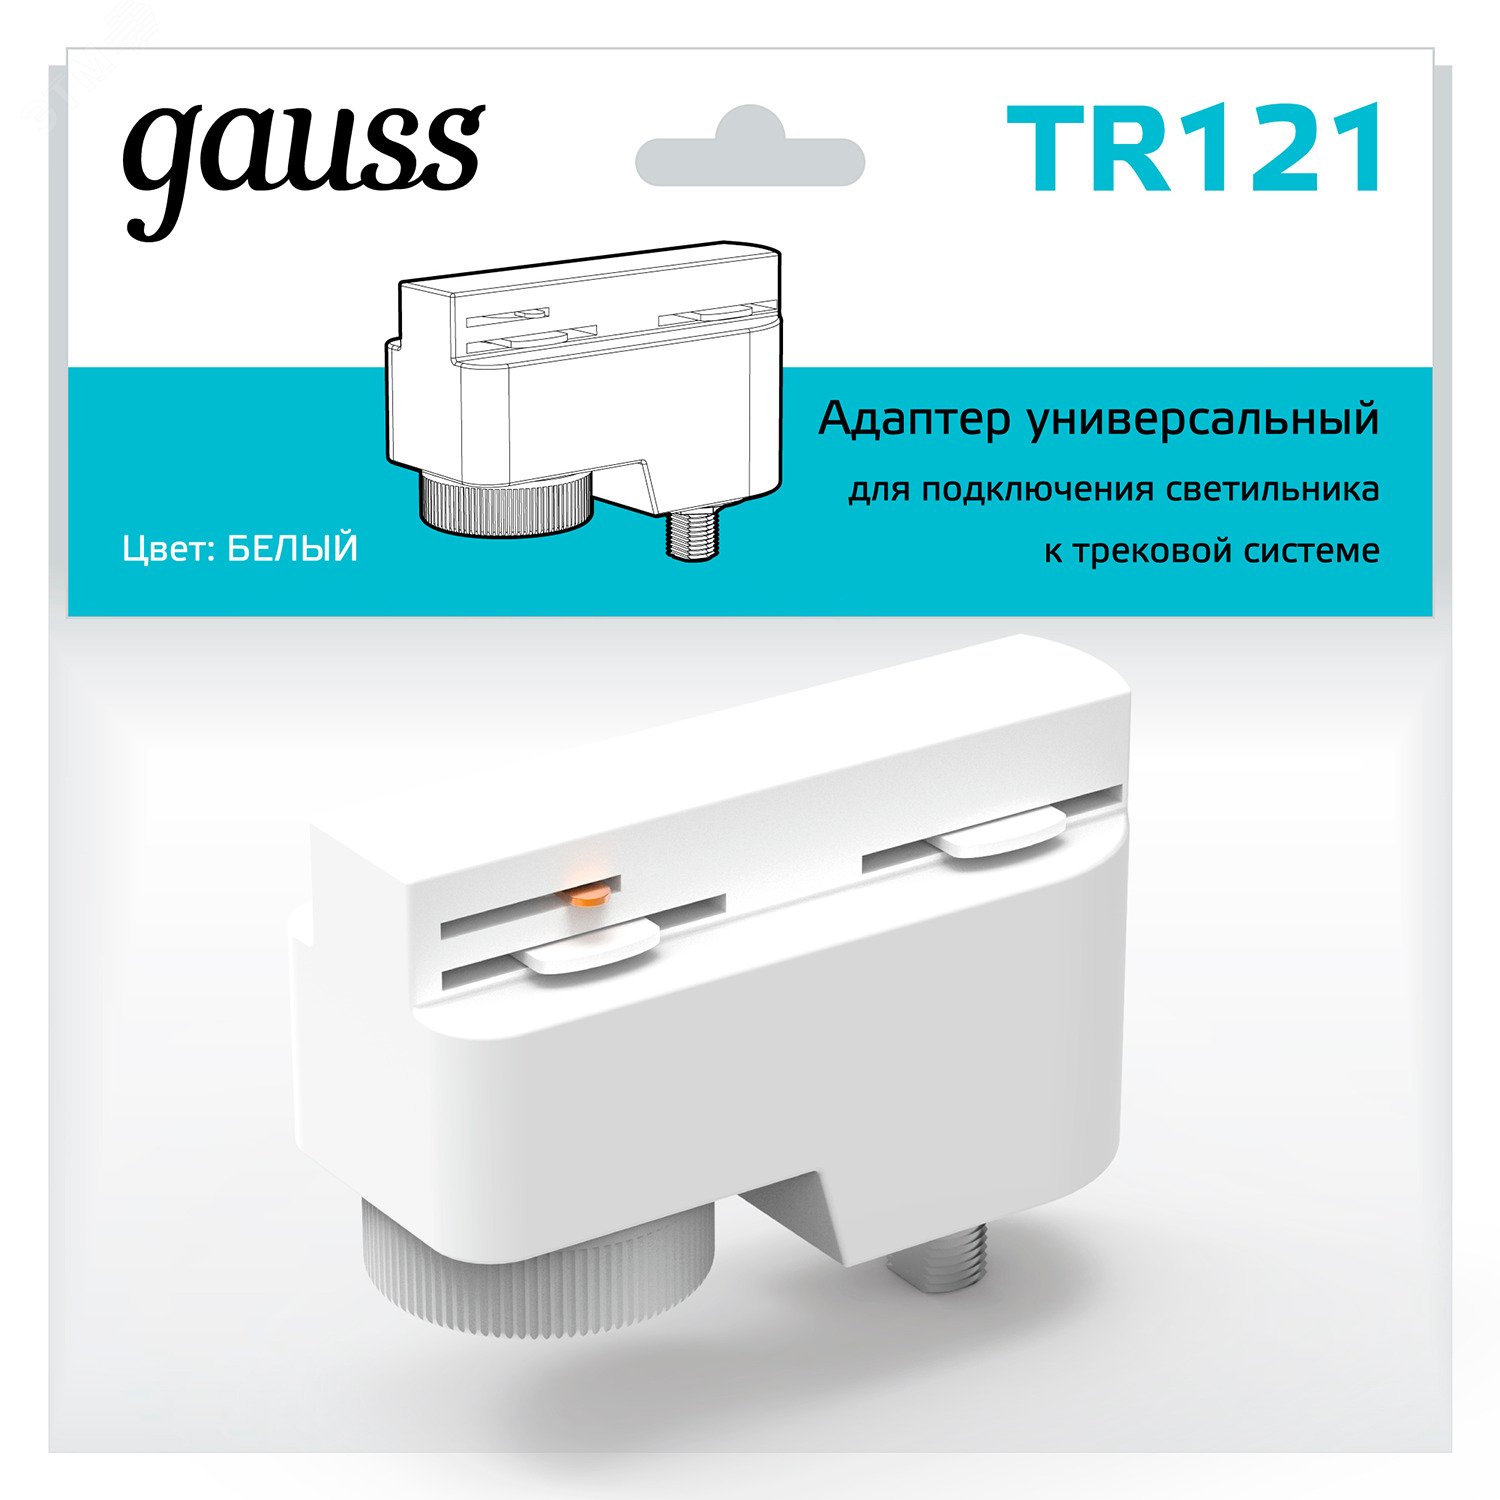 Адаптер универсальный для подключения светильника к трековой системе белый однофазный TR121 GAUSS - превью 4